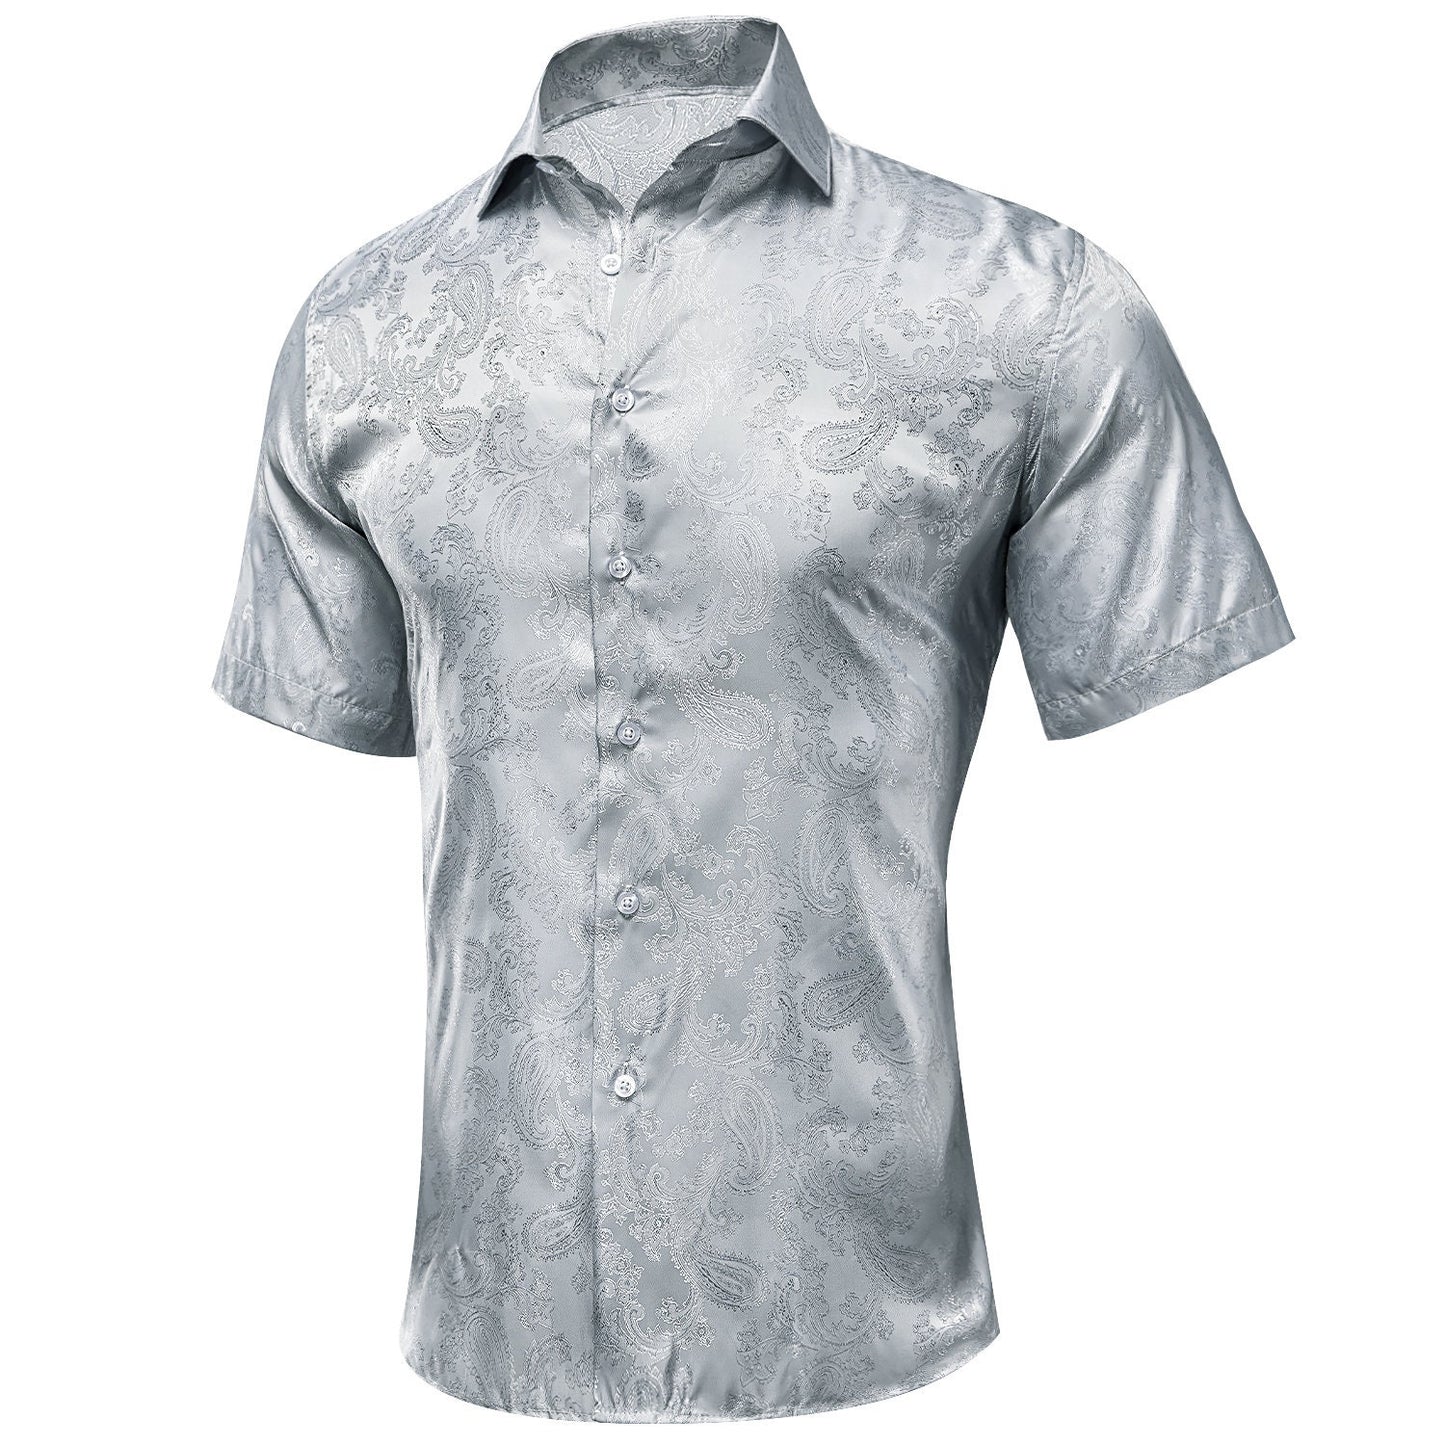 Men's Dress Shirt Long Sleeve